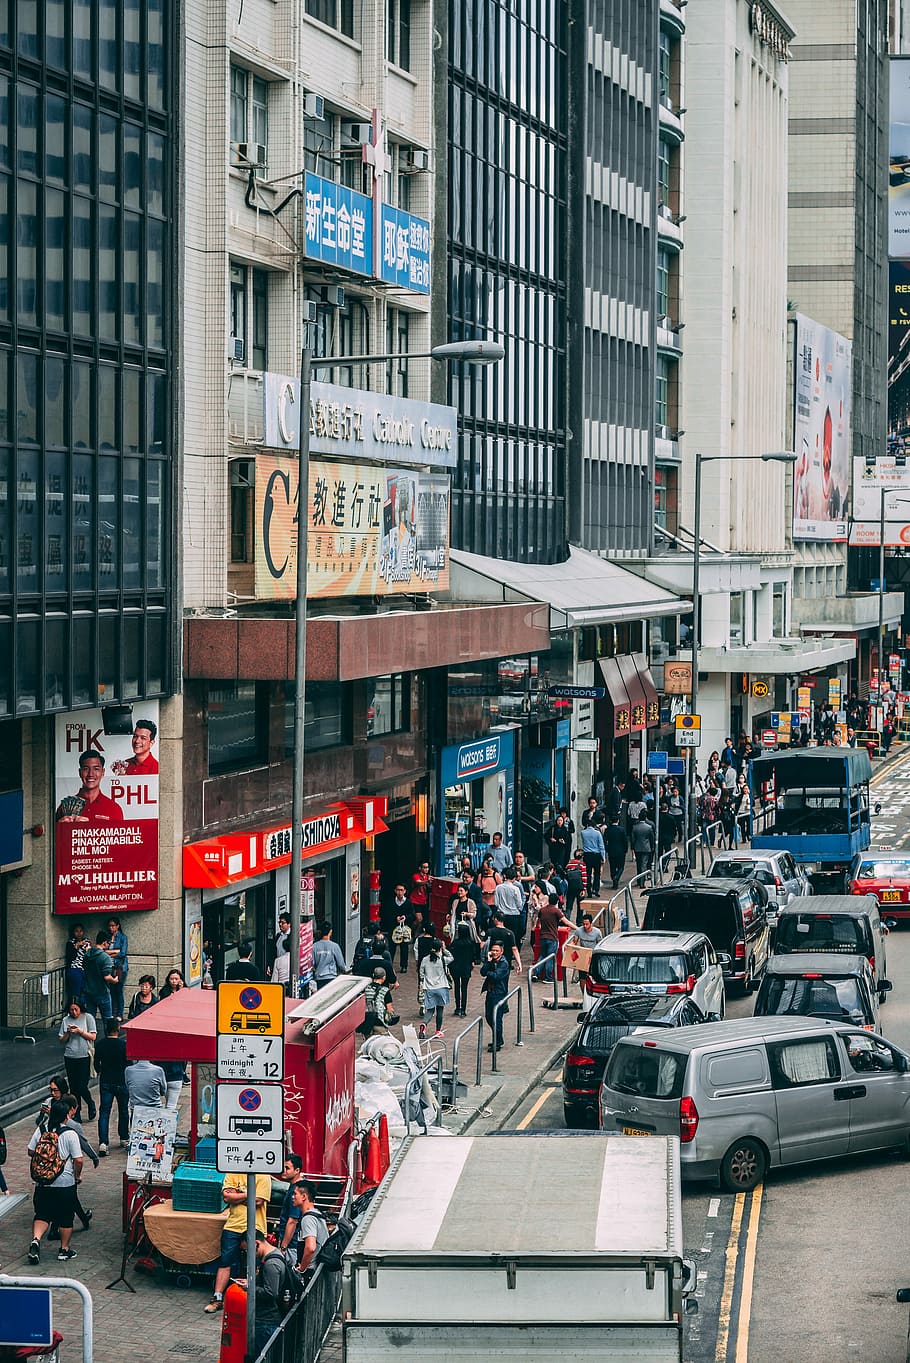 Hong Kong City Life, people walking on sidewalk, street, building